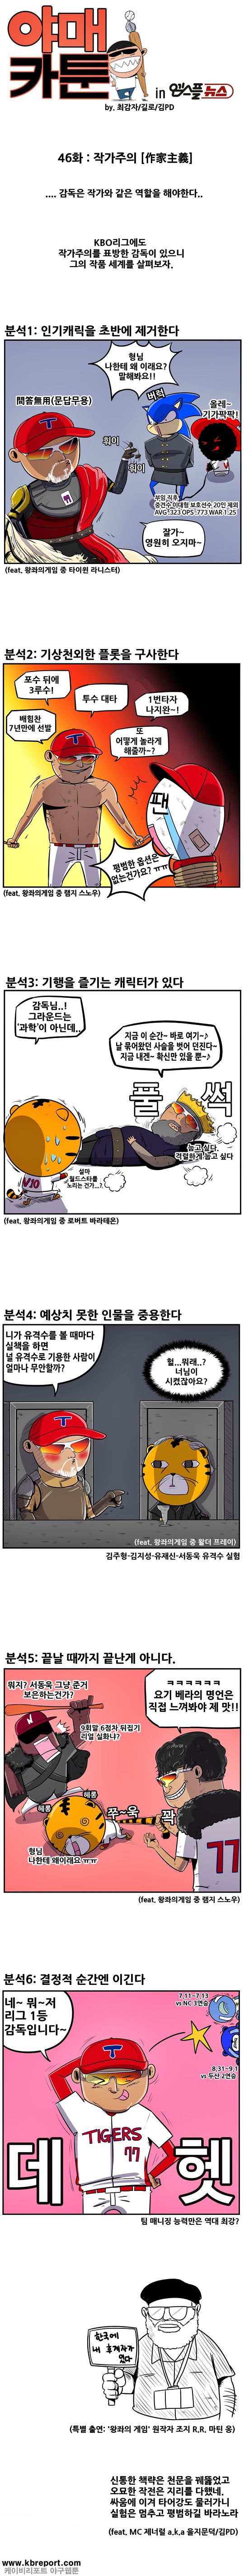 출처: [KBO 야매카툰] 김기태 감독과 '작가주의' 야구